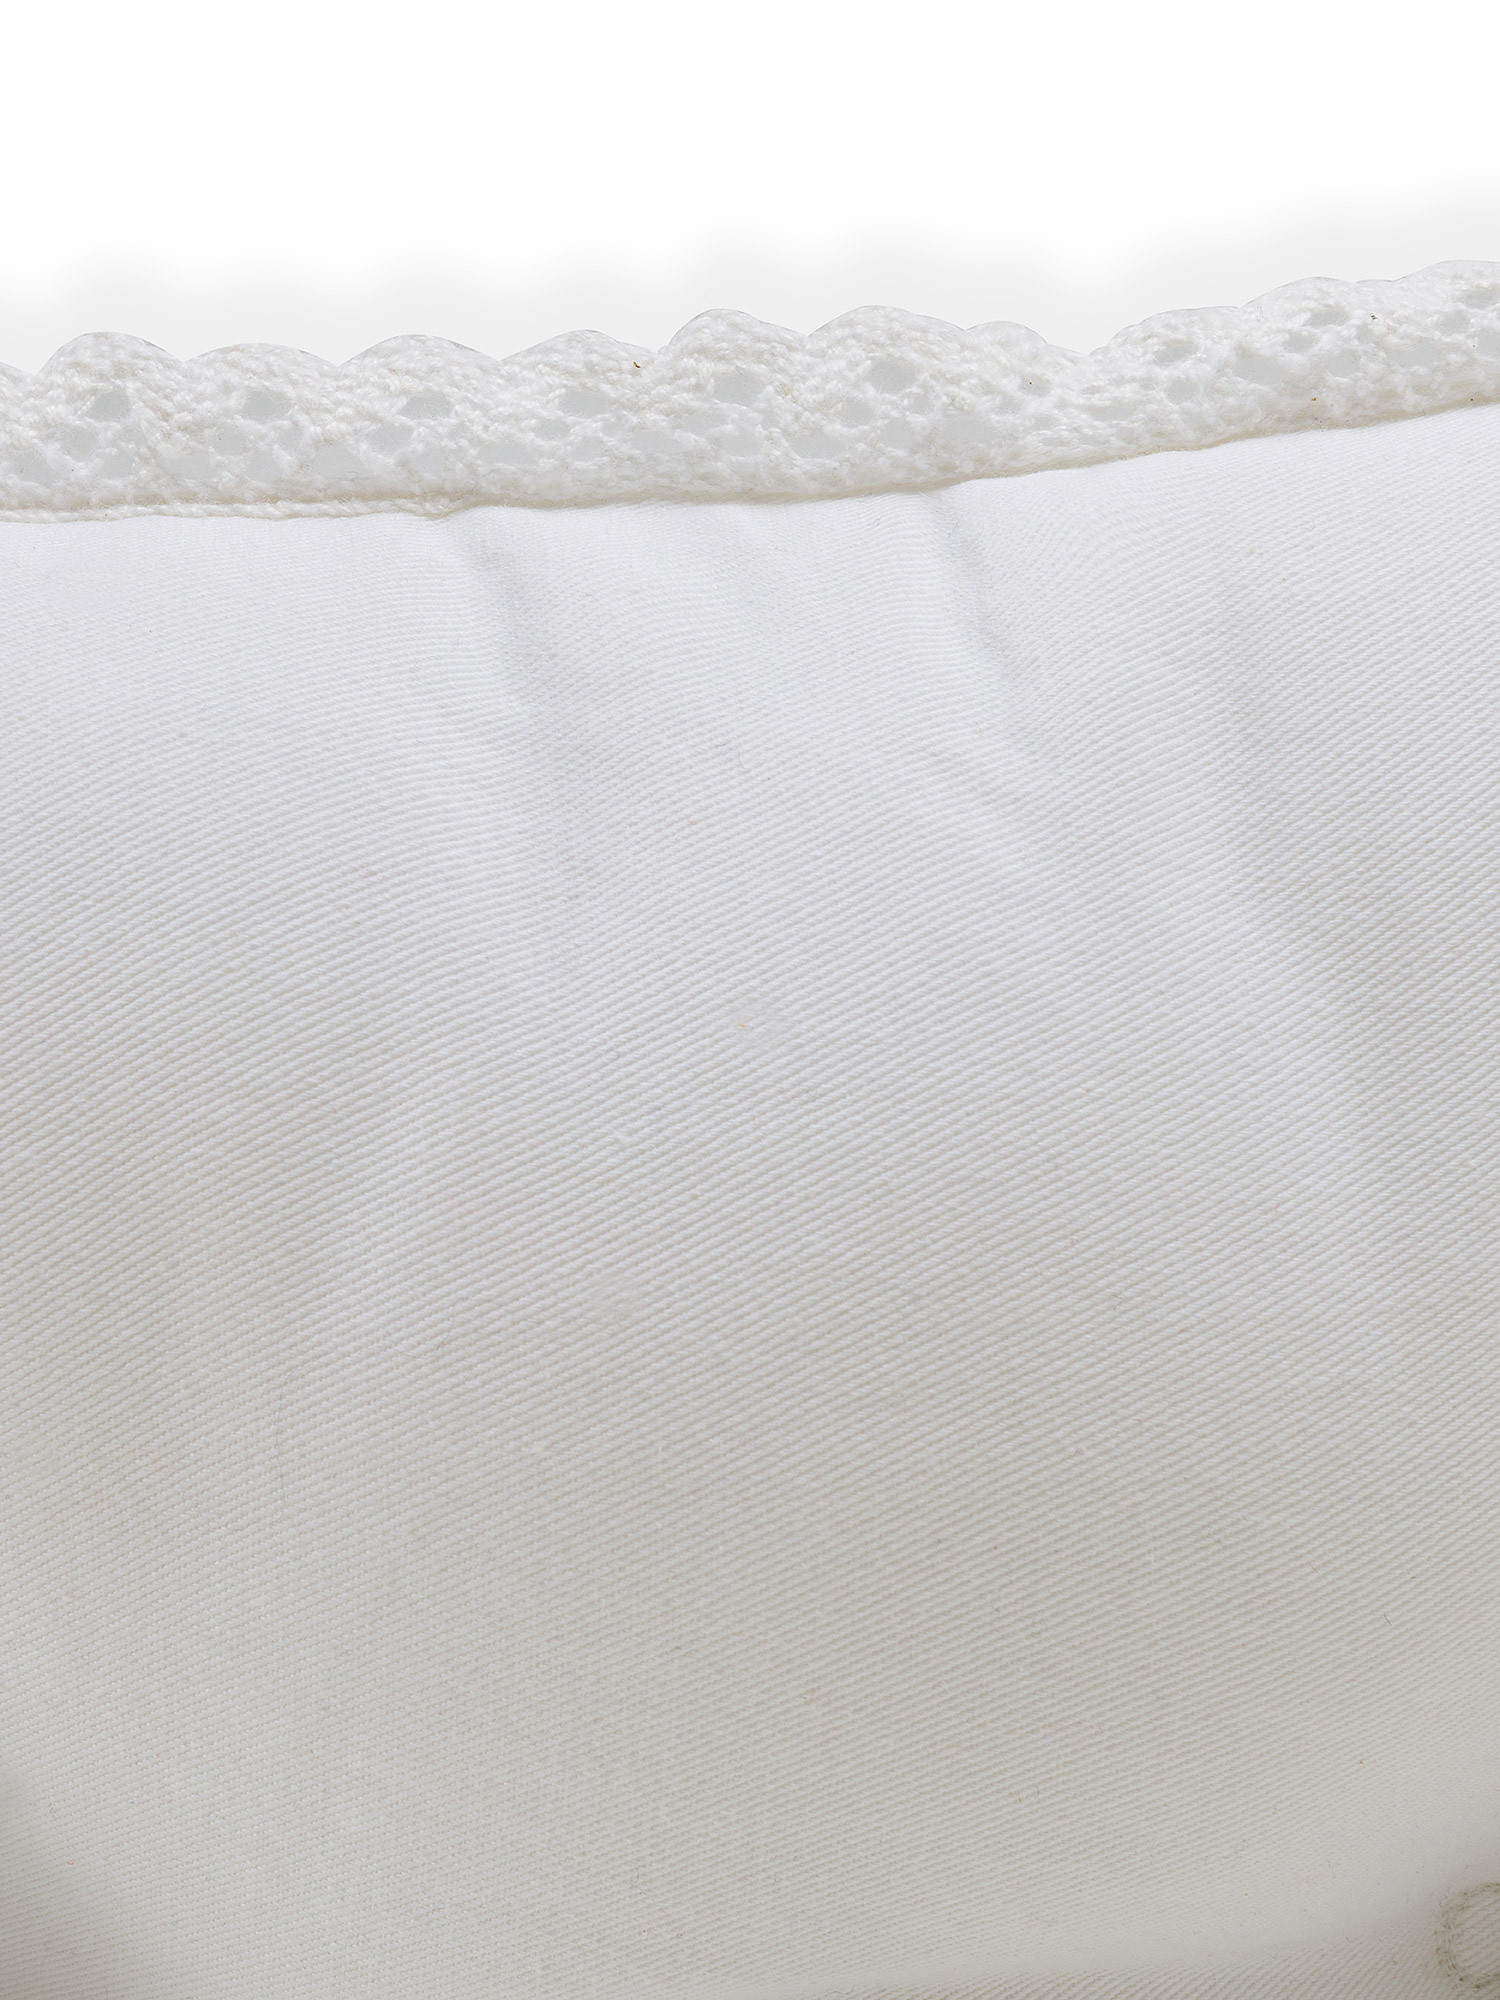 Cuscino da sedia twill di cotone con ricamo, Bianco, large image number 1